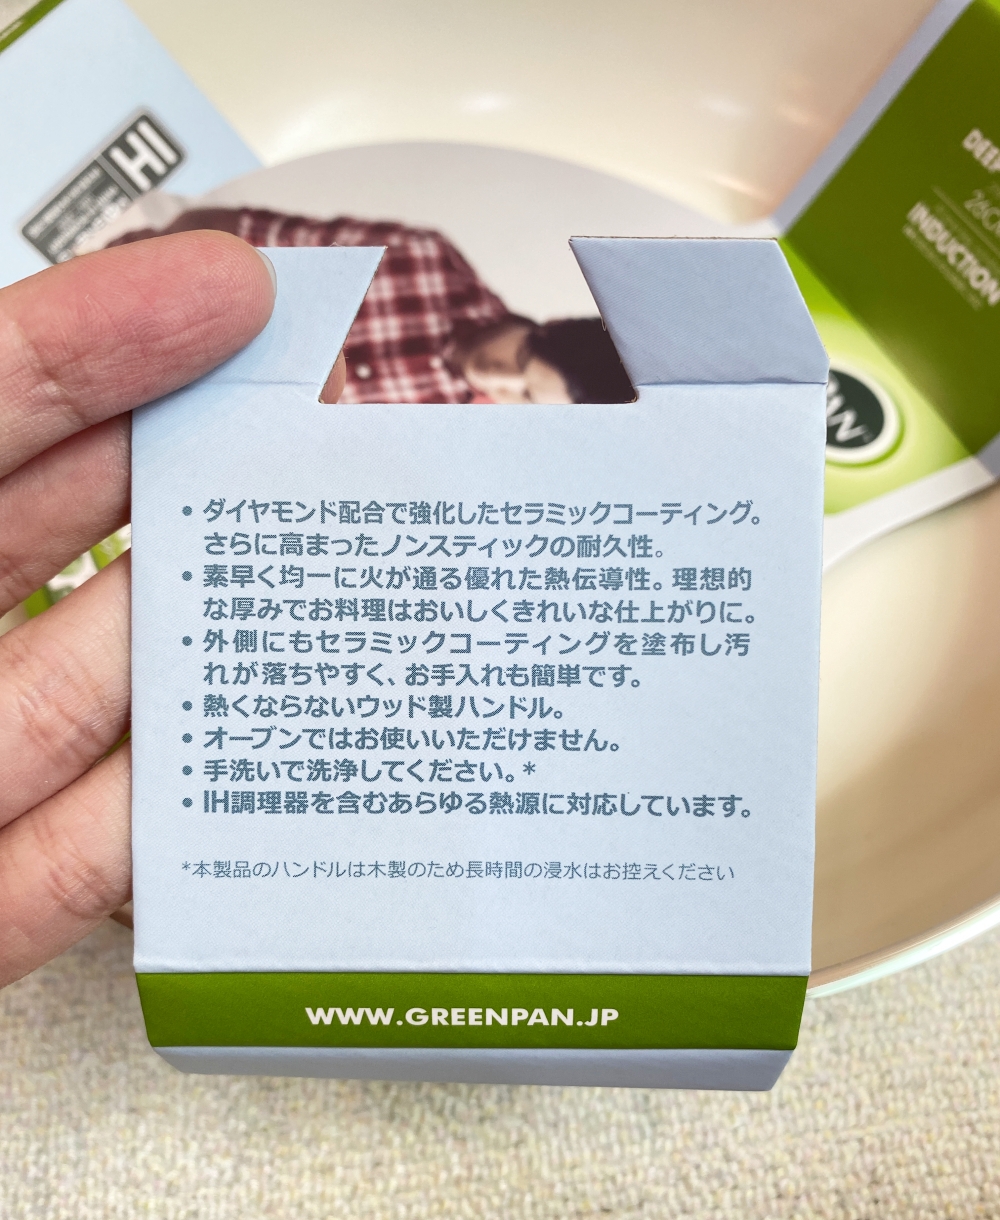 【夢幻鍋具】GreenPan x Mocomichi速水茂虎道聯名夢幻水藍鍋具組～打造妳的月薪嬌妻日系時尚廚房